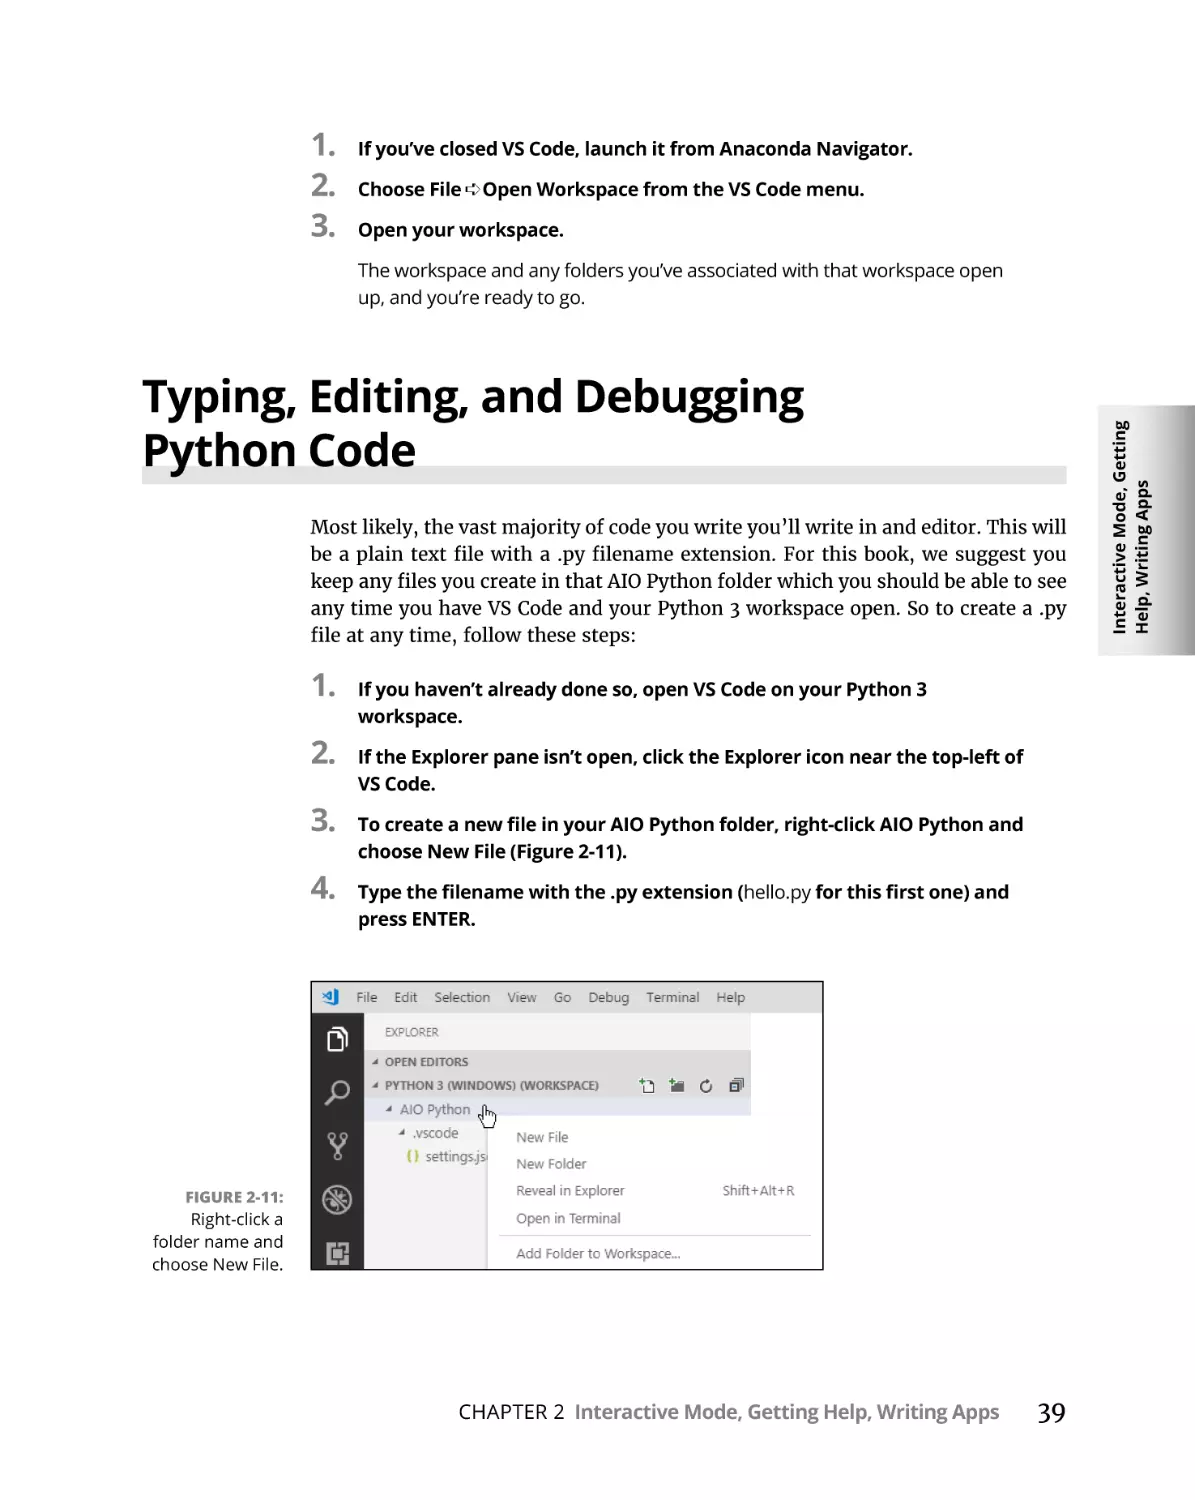 Typing, Editing, and Debugging Python Code